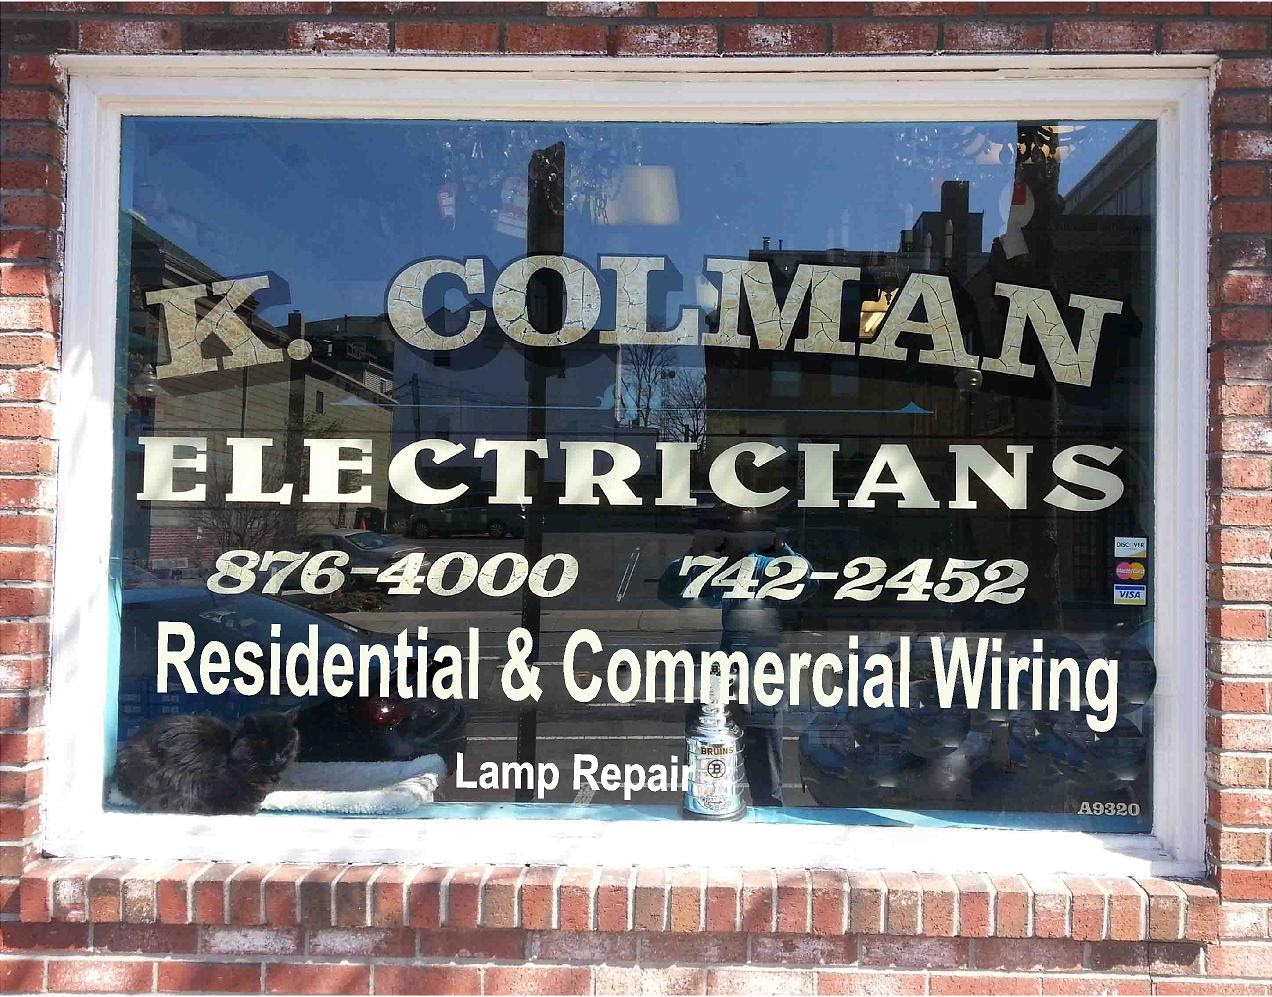 Colman Electric